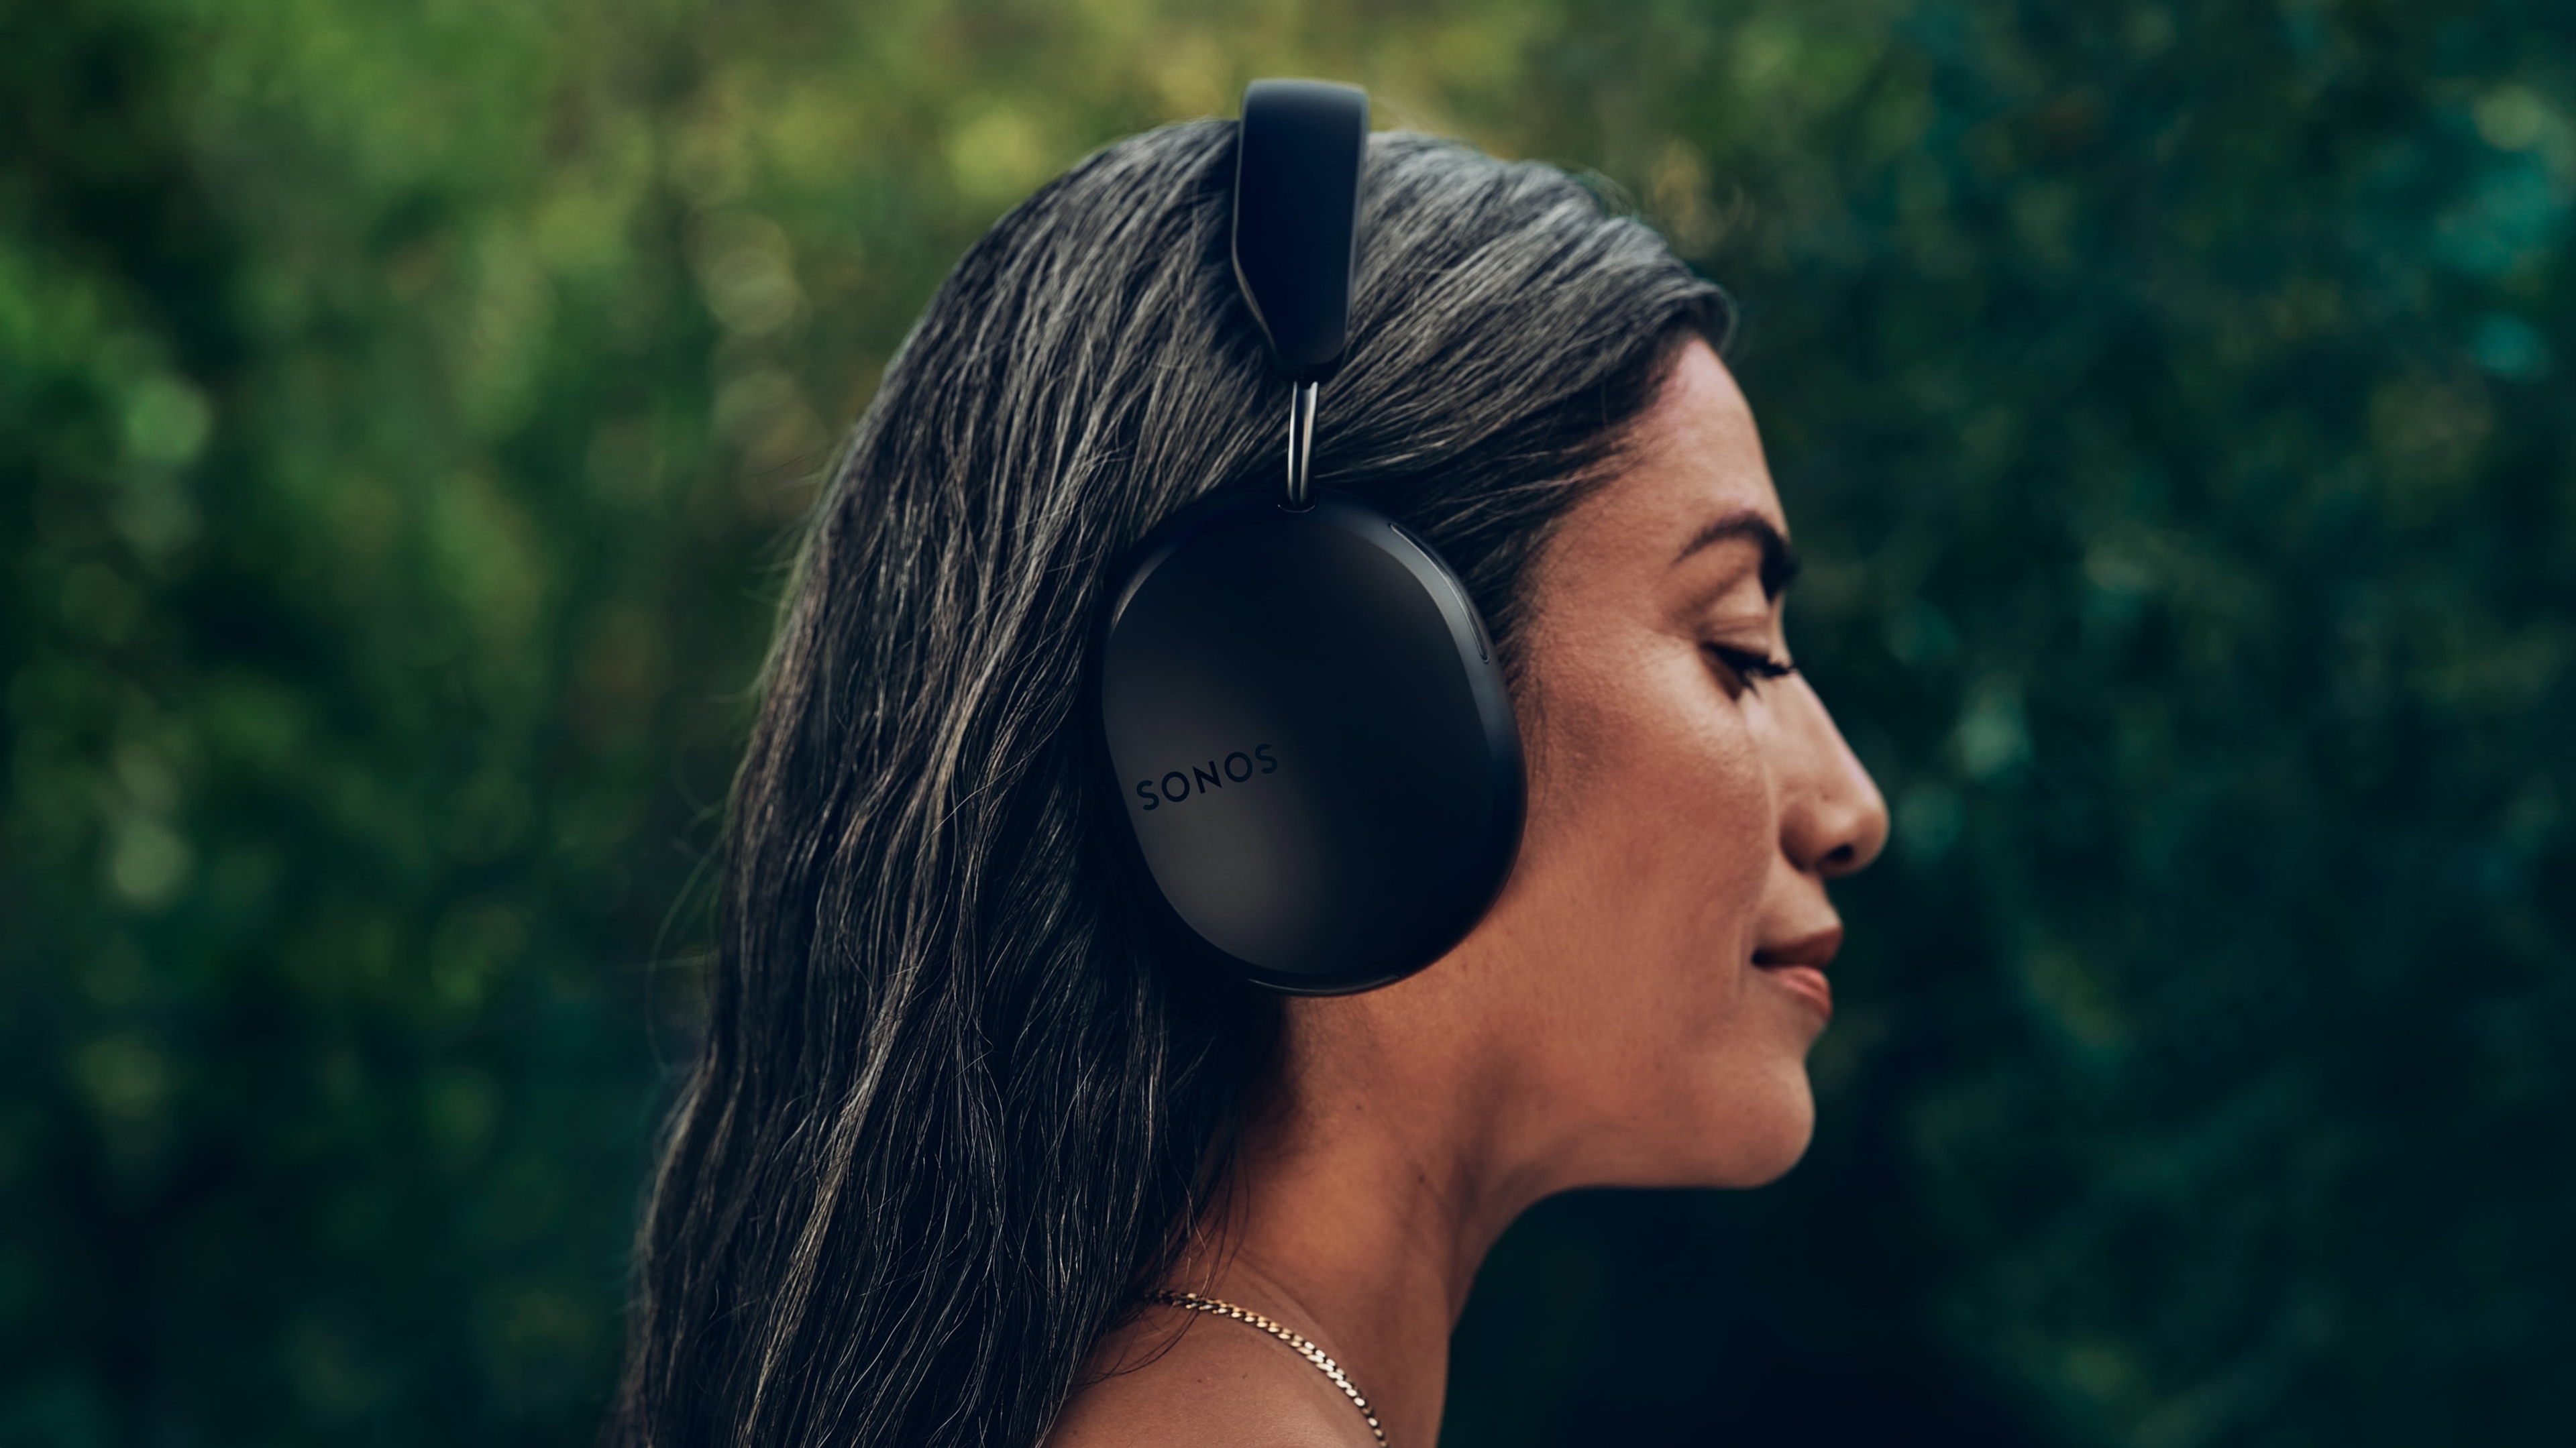 Profil kobiety w słuchawkach Sonos Ace w kolorze czarnym